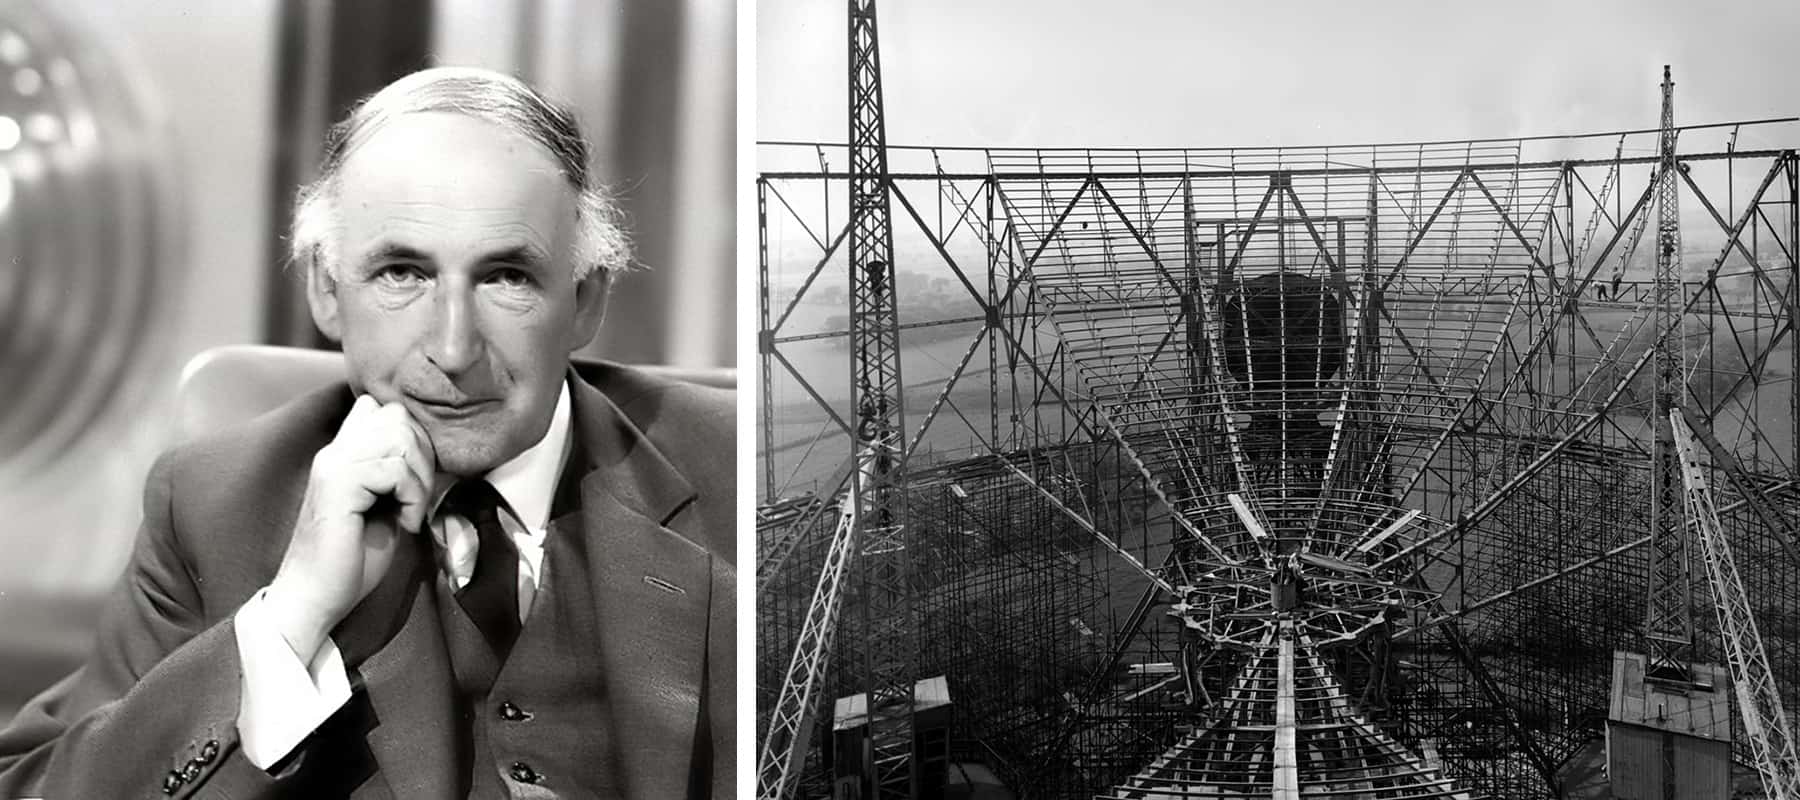 שתי תמונות בשחור-לבן: גבר בחליפה וטלסקופ גדול בבנייה